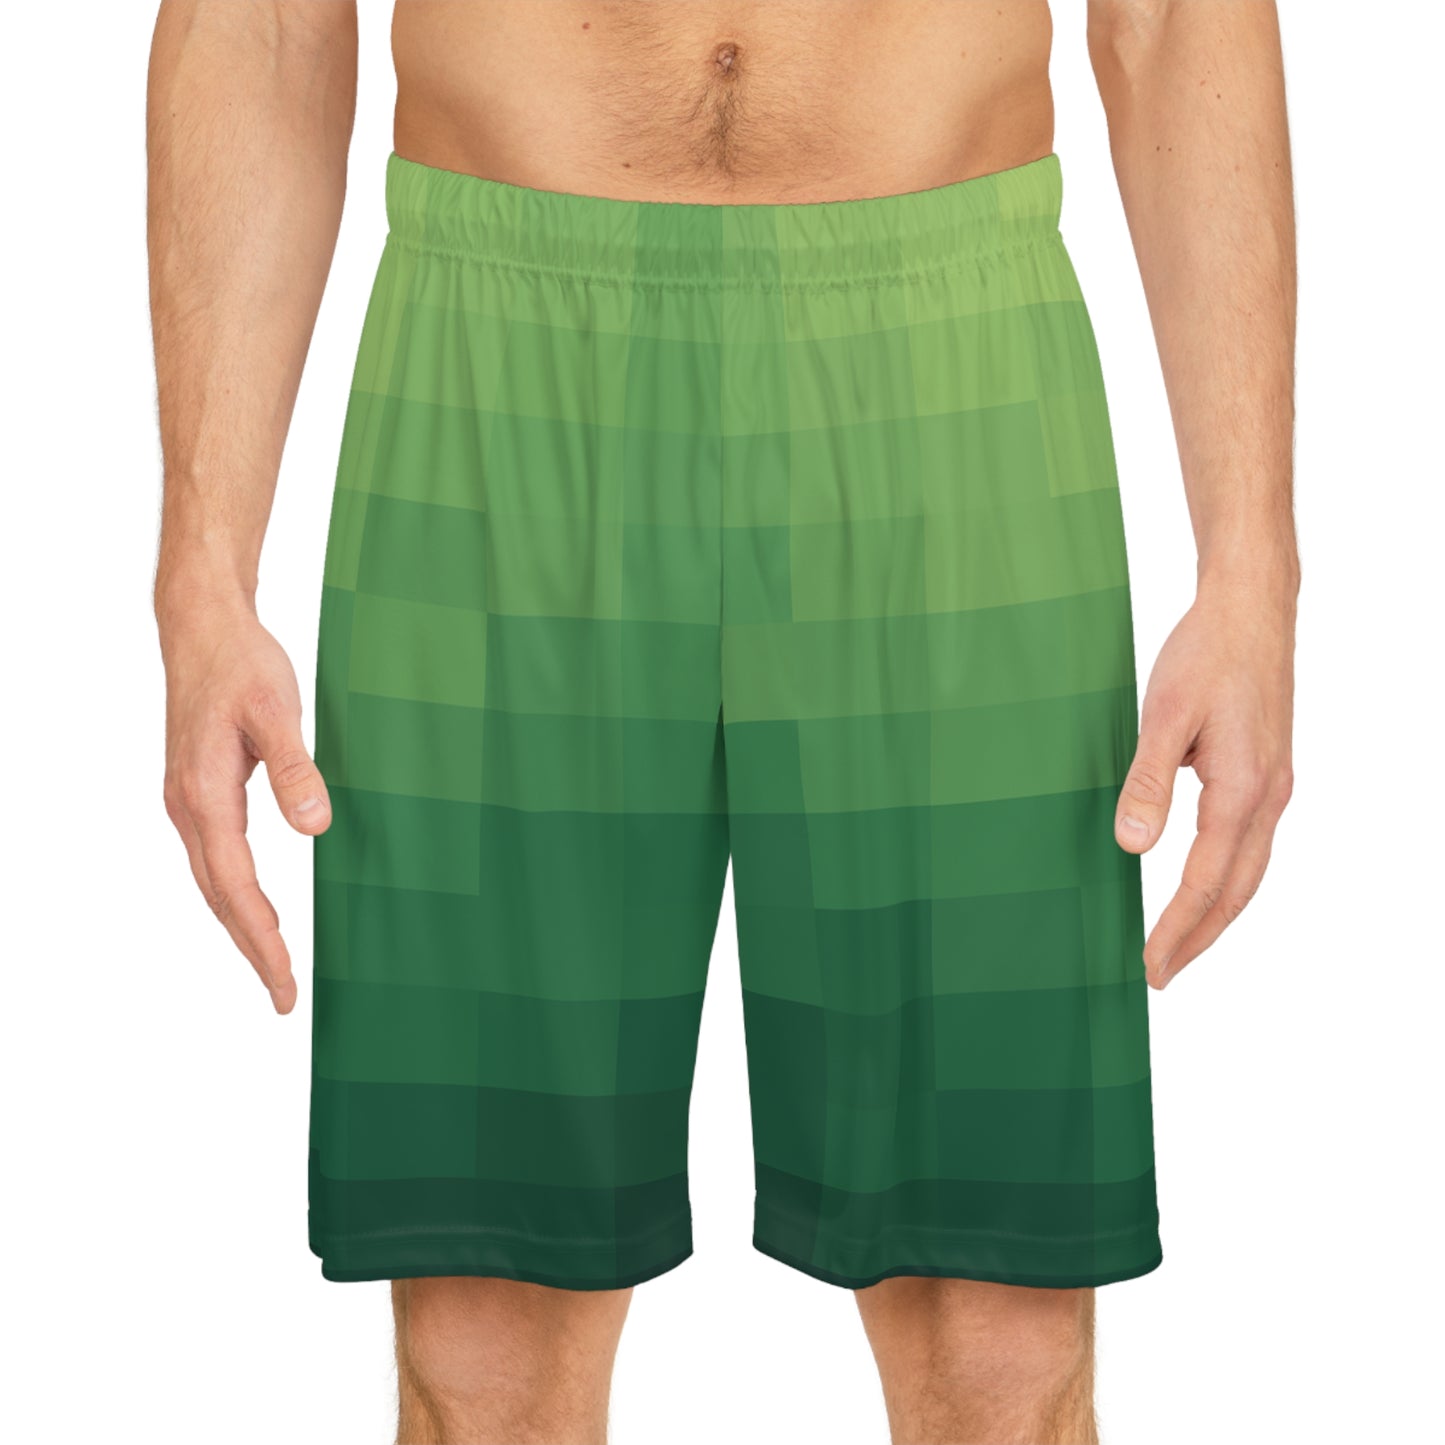 8-bit Green Basketball Shorts